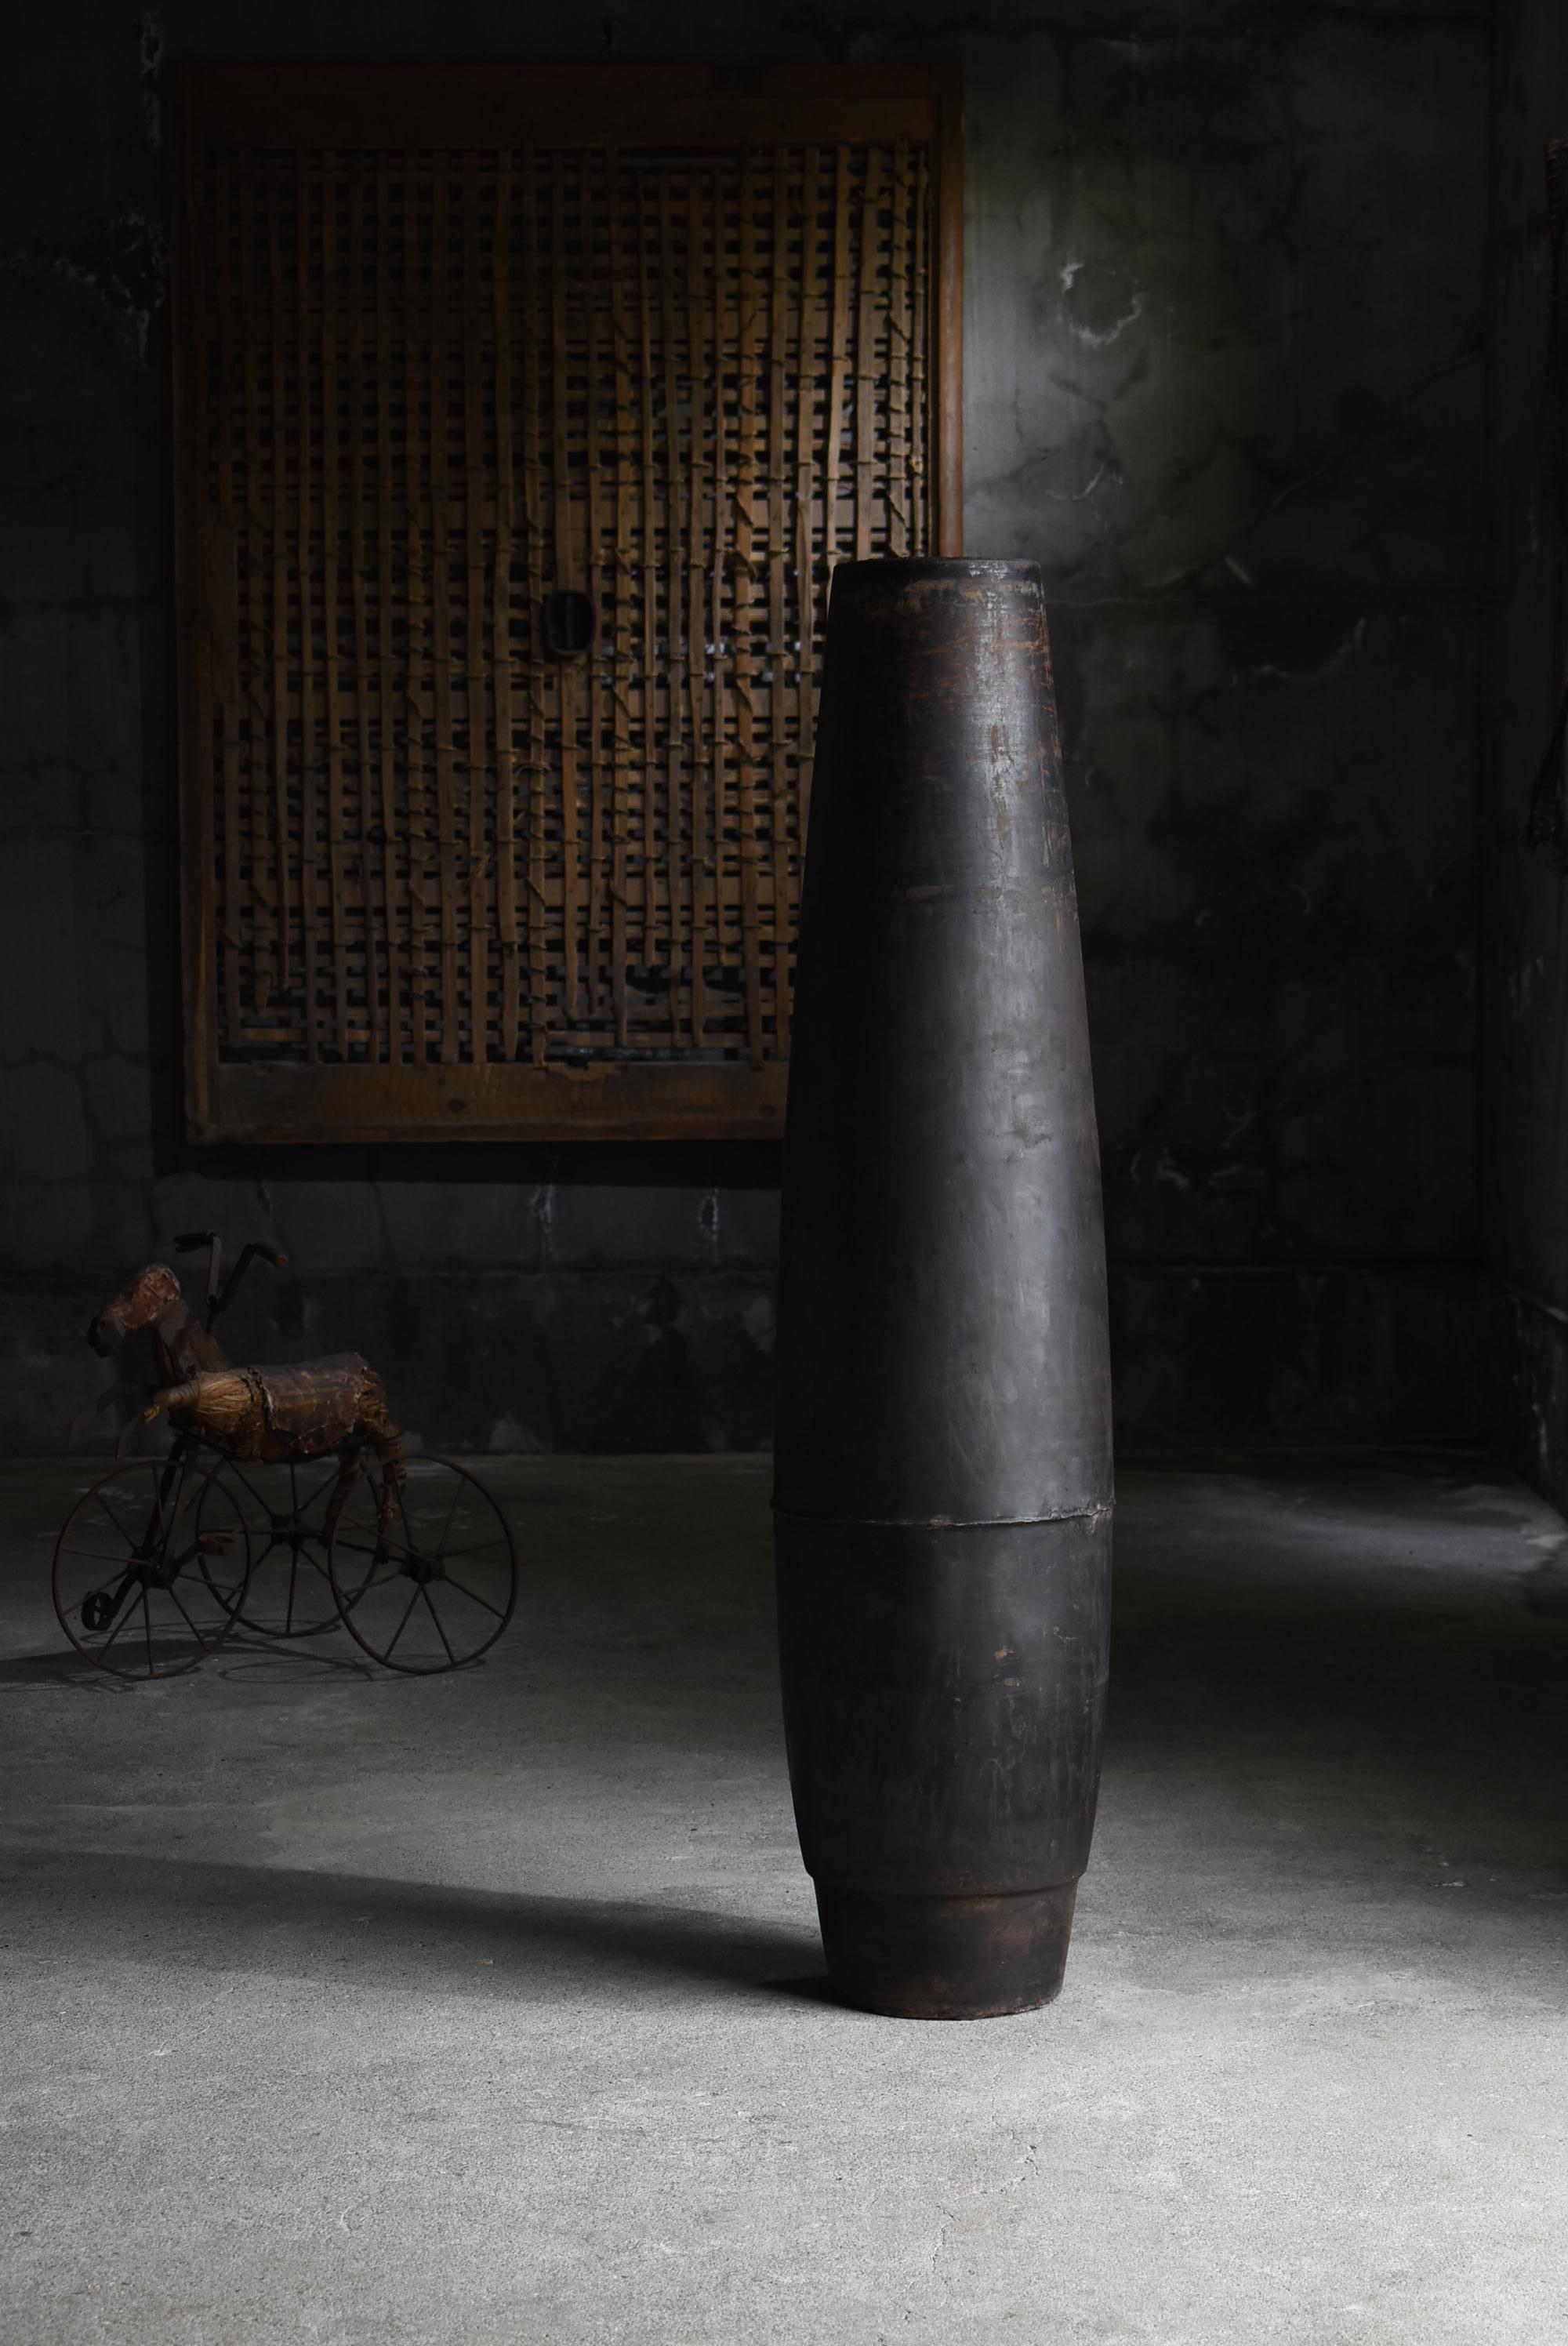 Cylindre en fer très ancien.
Il s'agirait d'un obus largué sur le Japon pendant la guerre.
On estime que cette période s'étend des années 1900 aux années 1940.

Quelque temps après sa chute, ce cylindre a été découvert.

Ce coquillage, devenu un bel